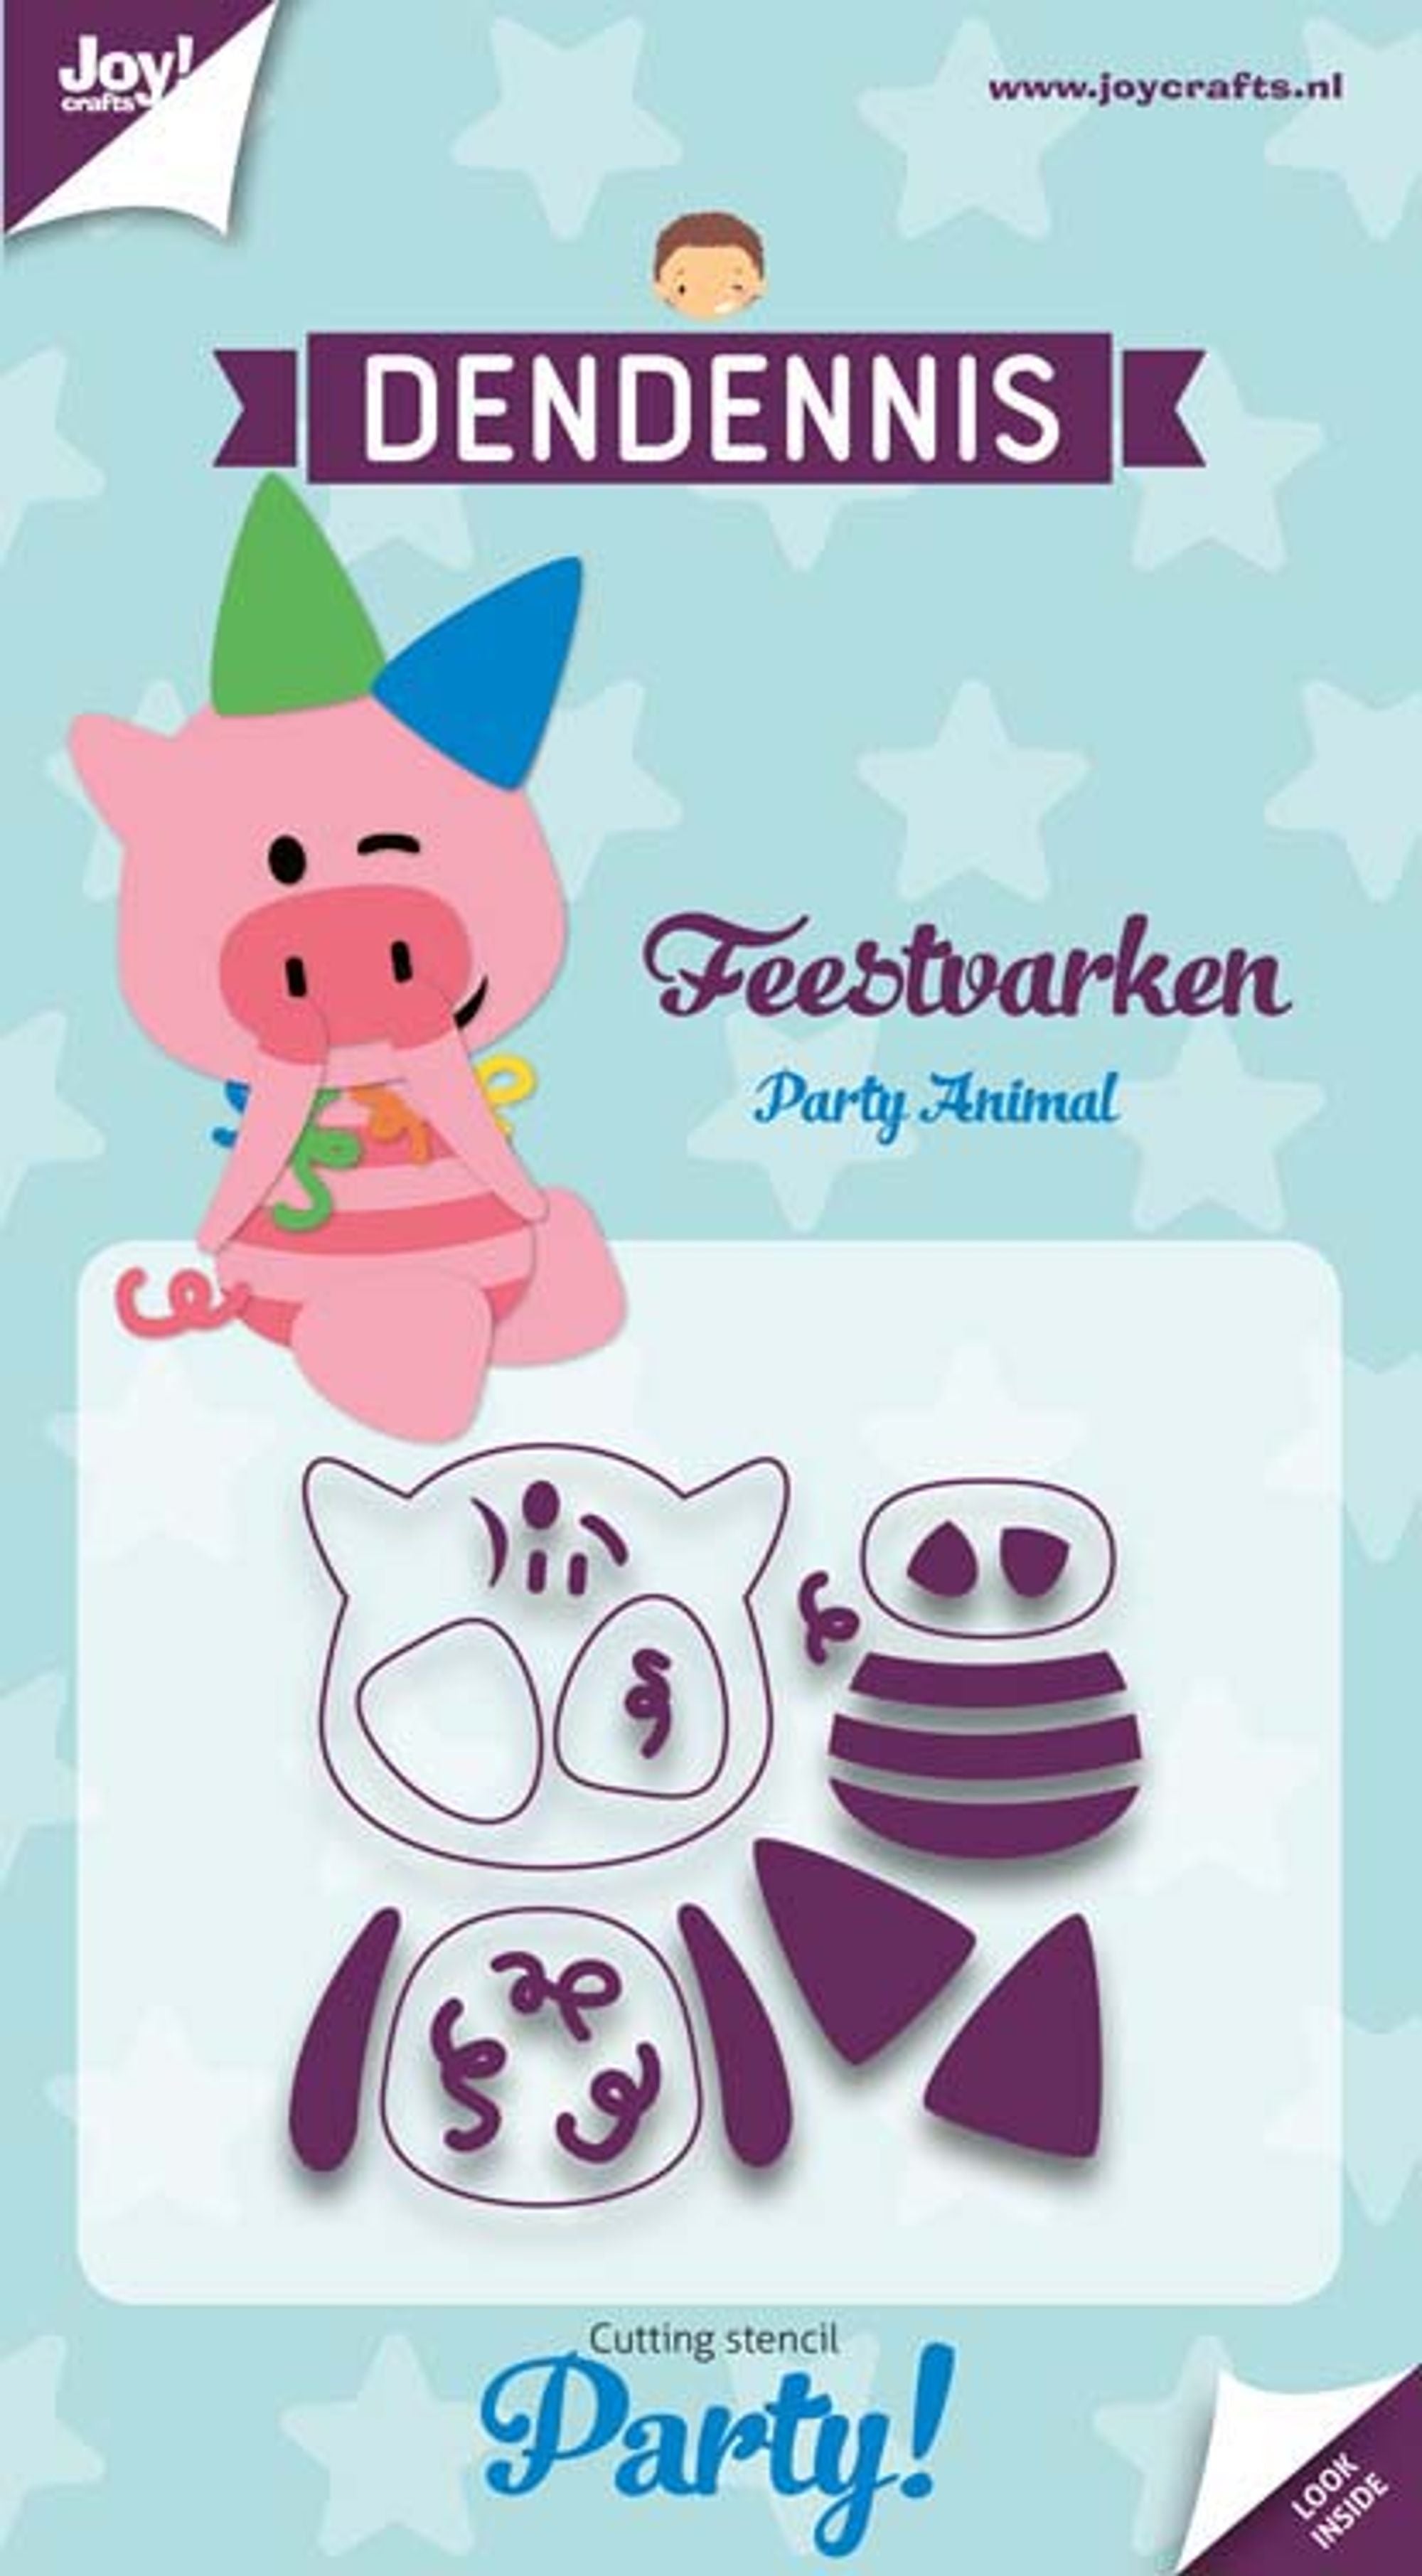 Joy! Craft Die - Dendennis Party - Party Pig